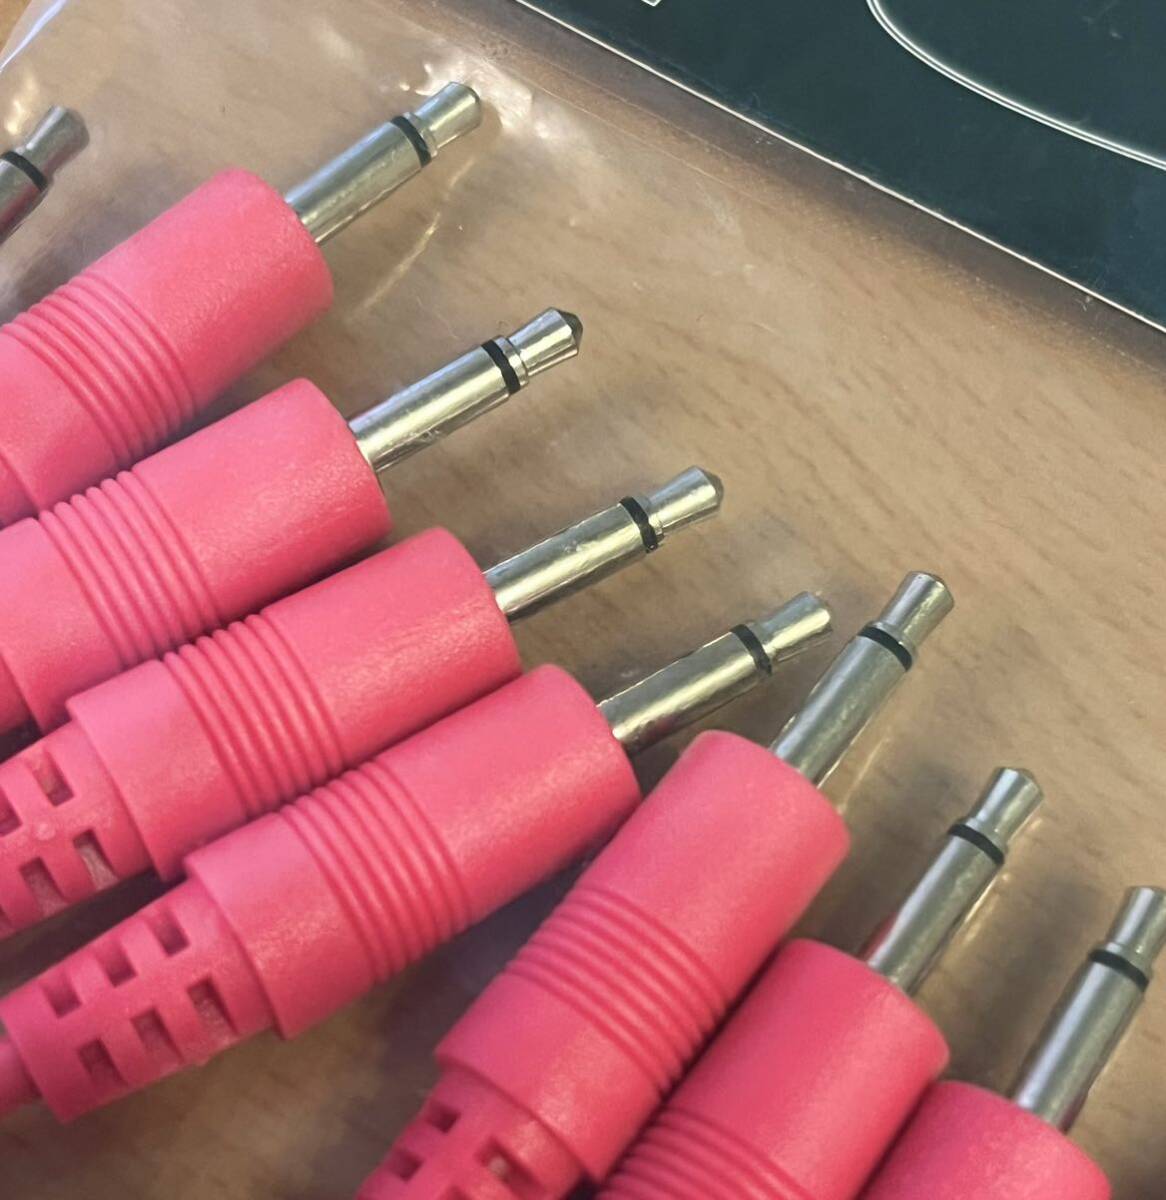 Make Noise patch cable розовый соединительный кабель 15cm 5шт.@ новый товар нераспечатанный modular Synth евро подставка 